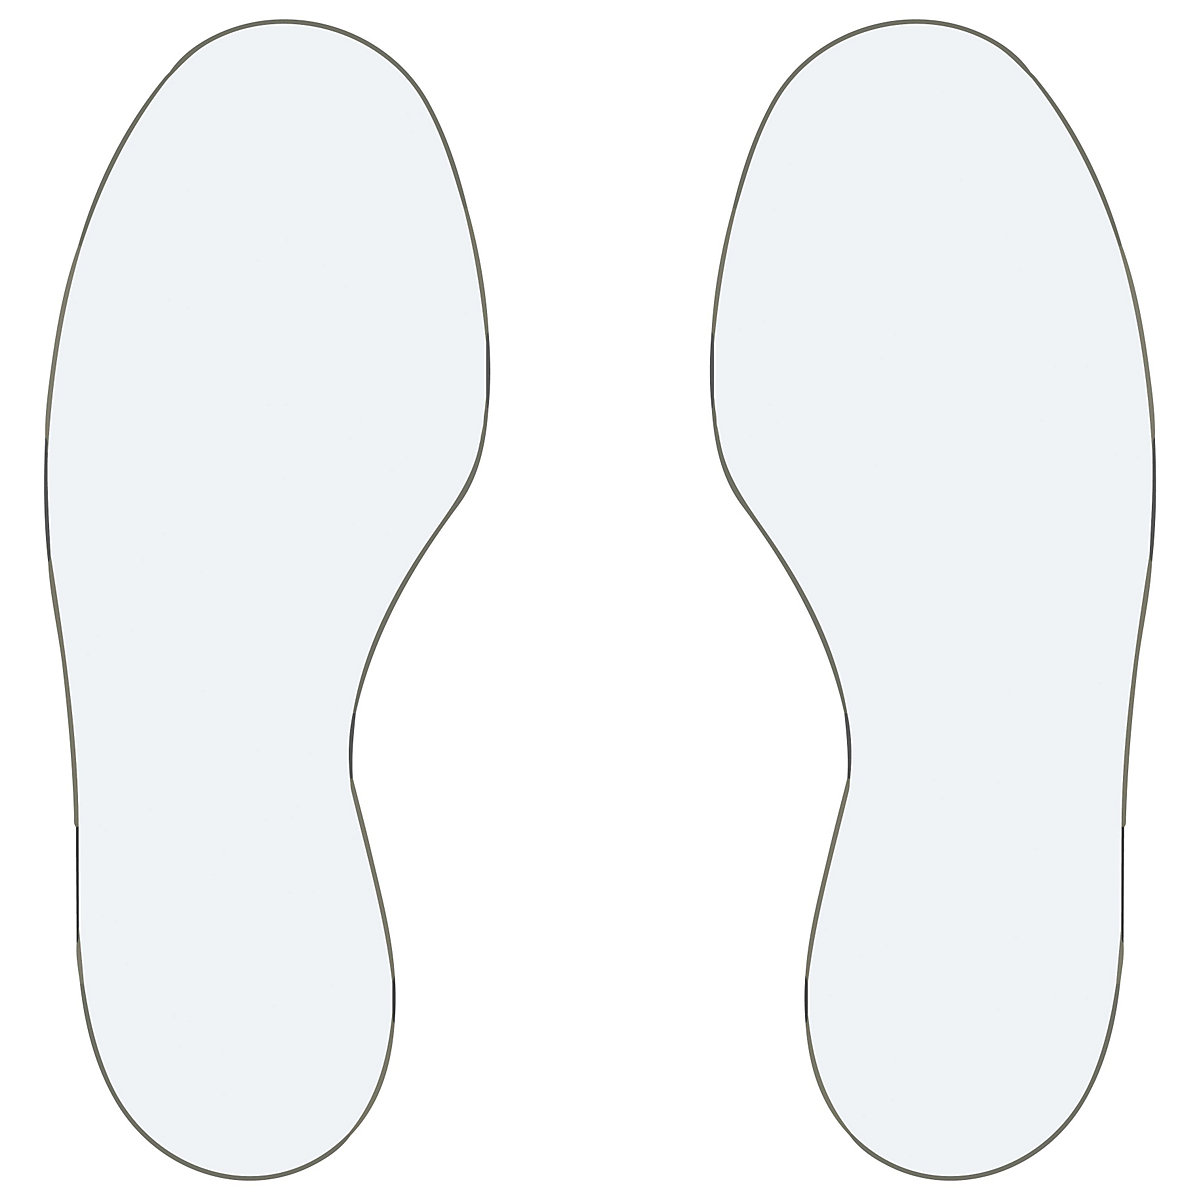 Podlahové značení z PVC, stopy, 5 pravých / 5 levých, bal.j. 10 ks, bílá